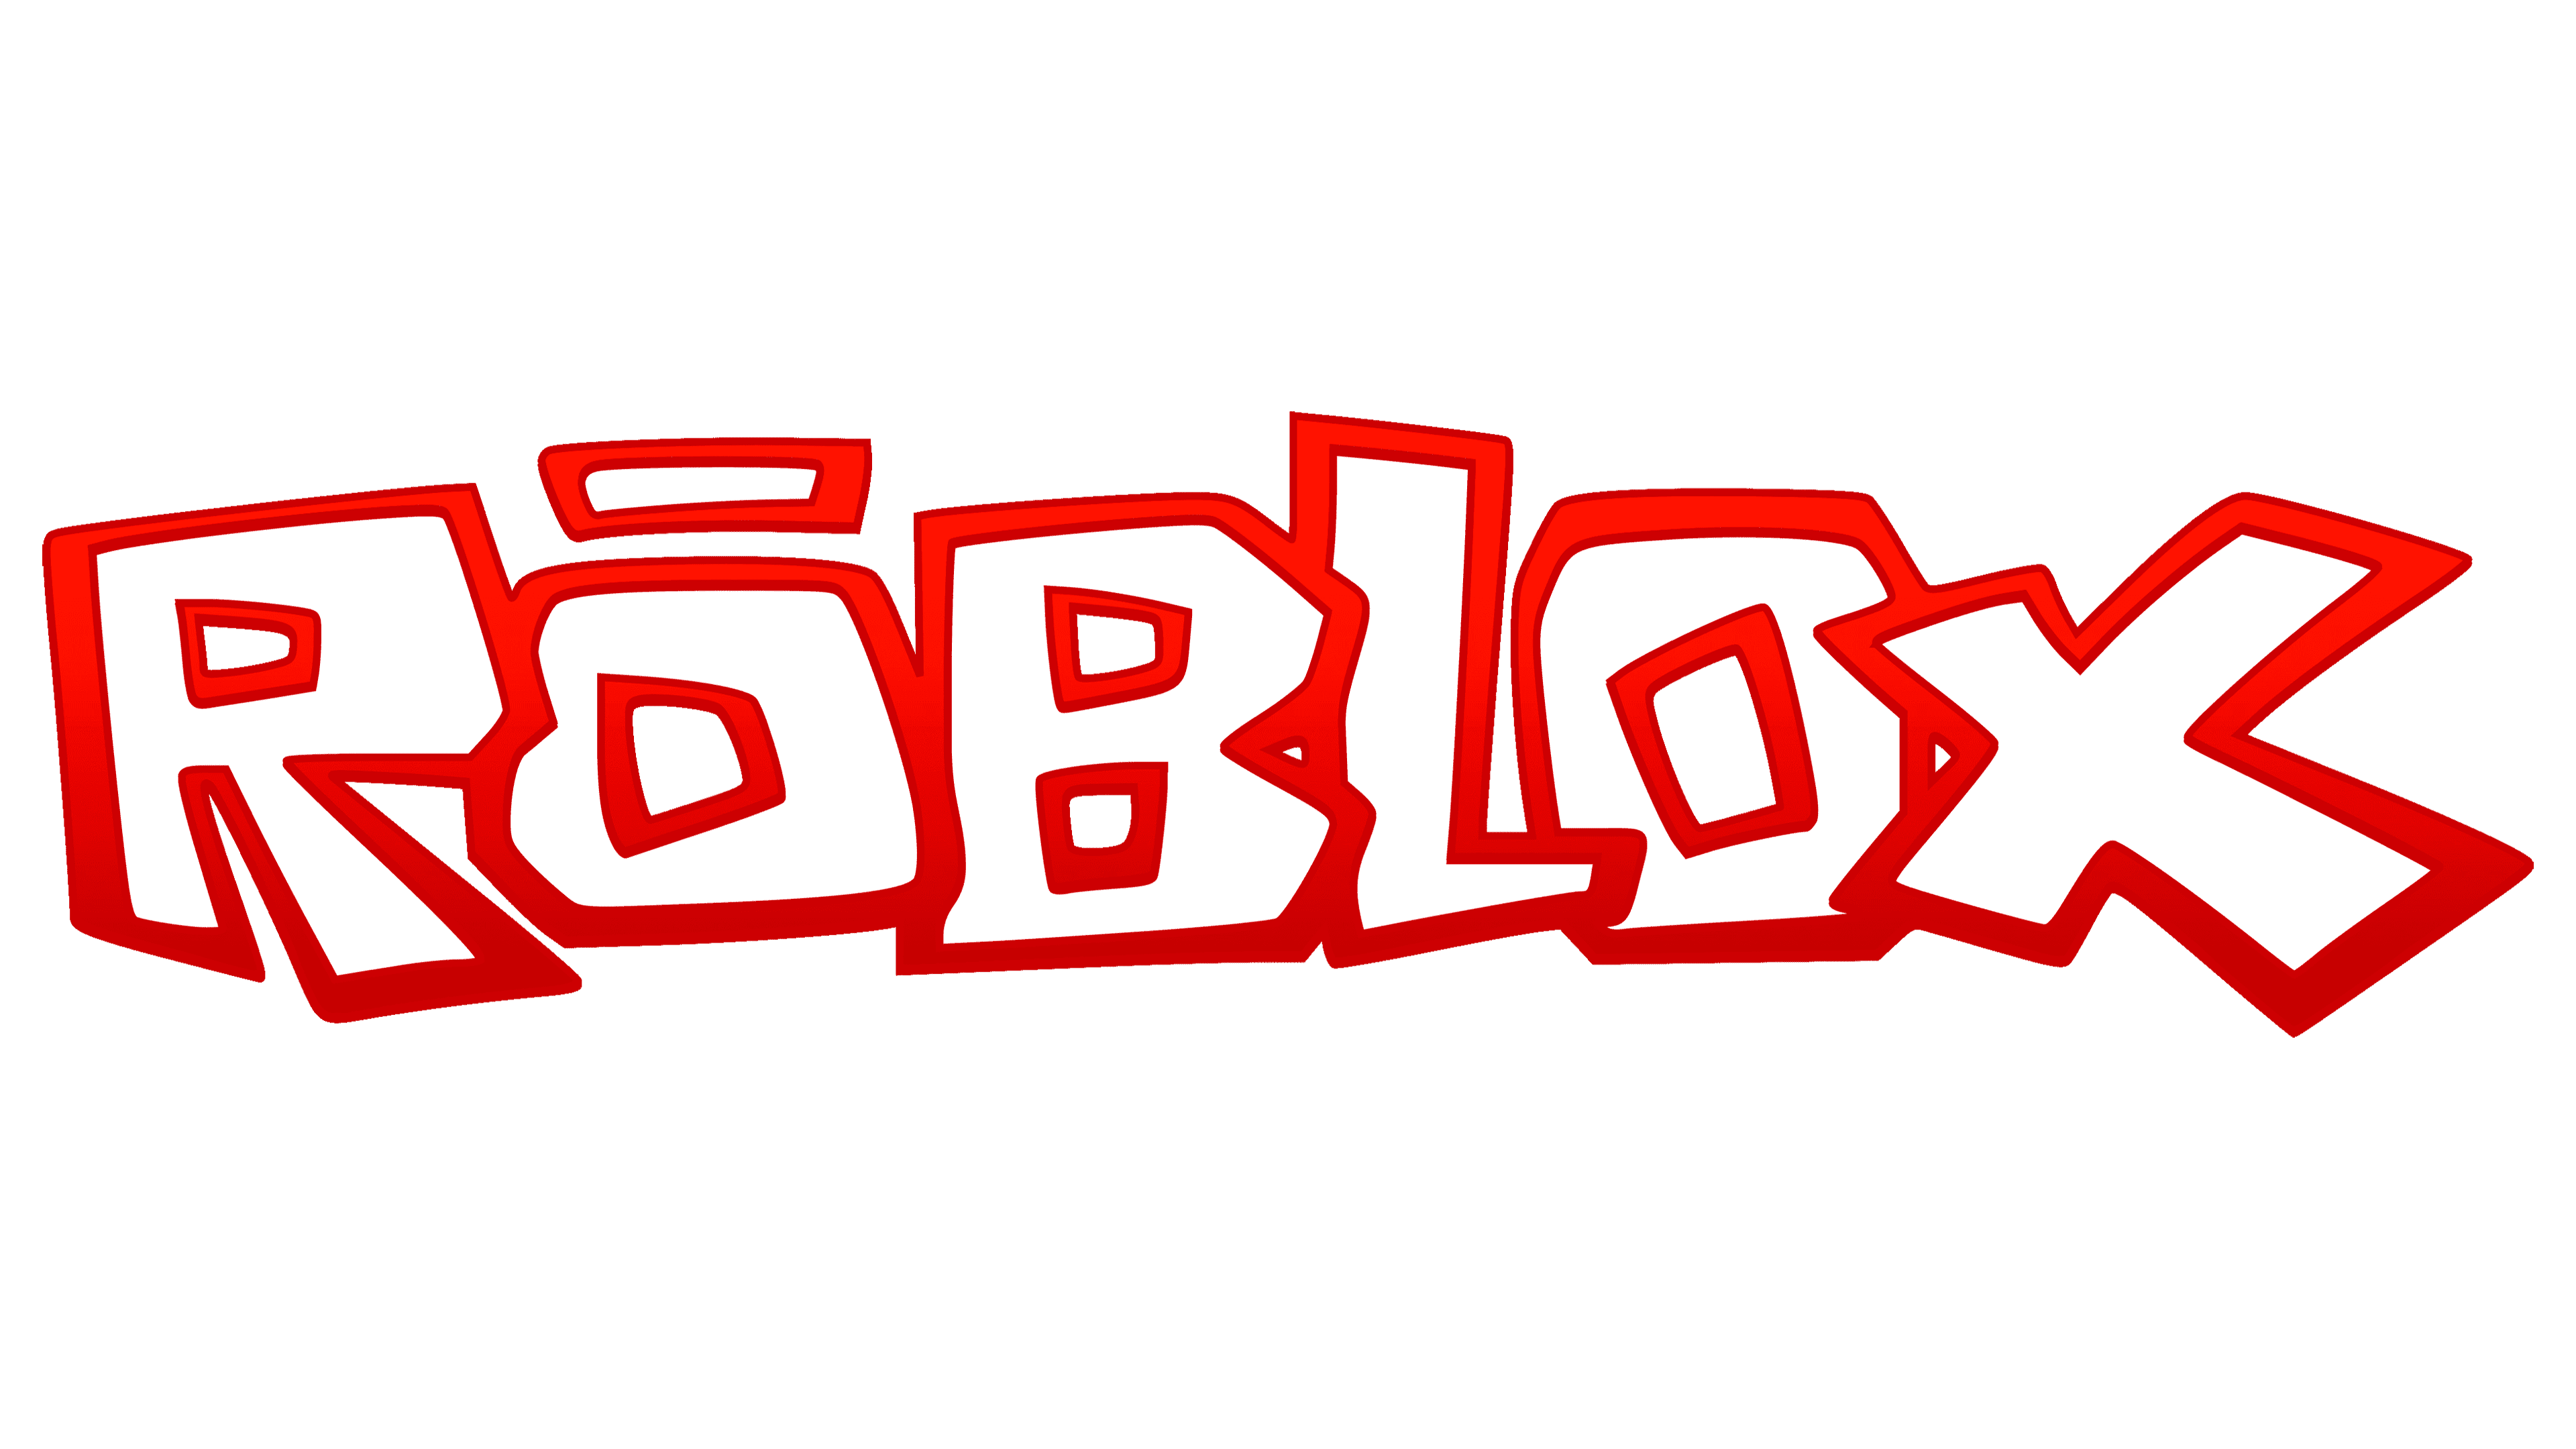 Roblox just changed their logo again 